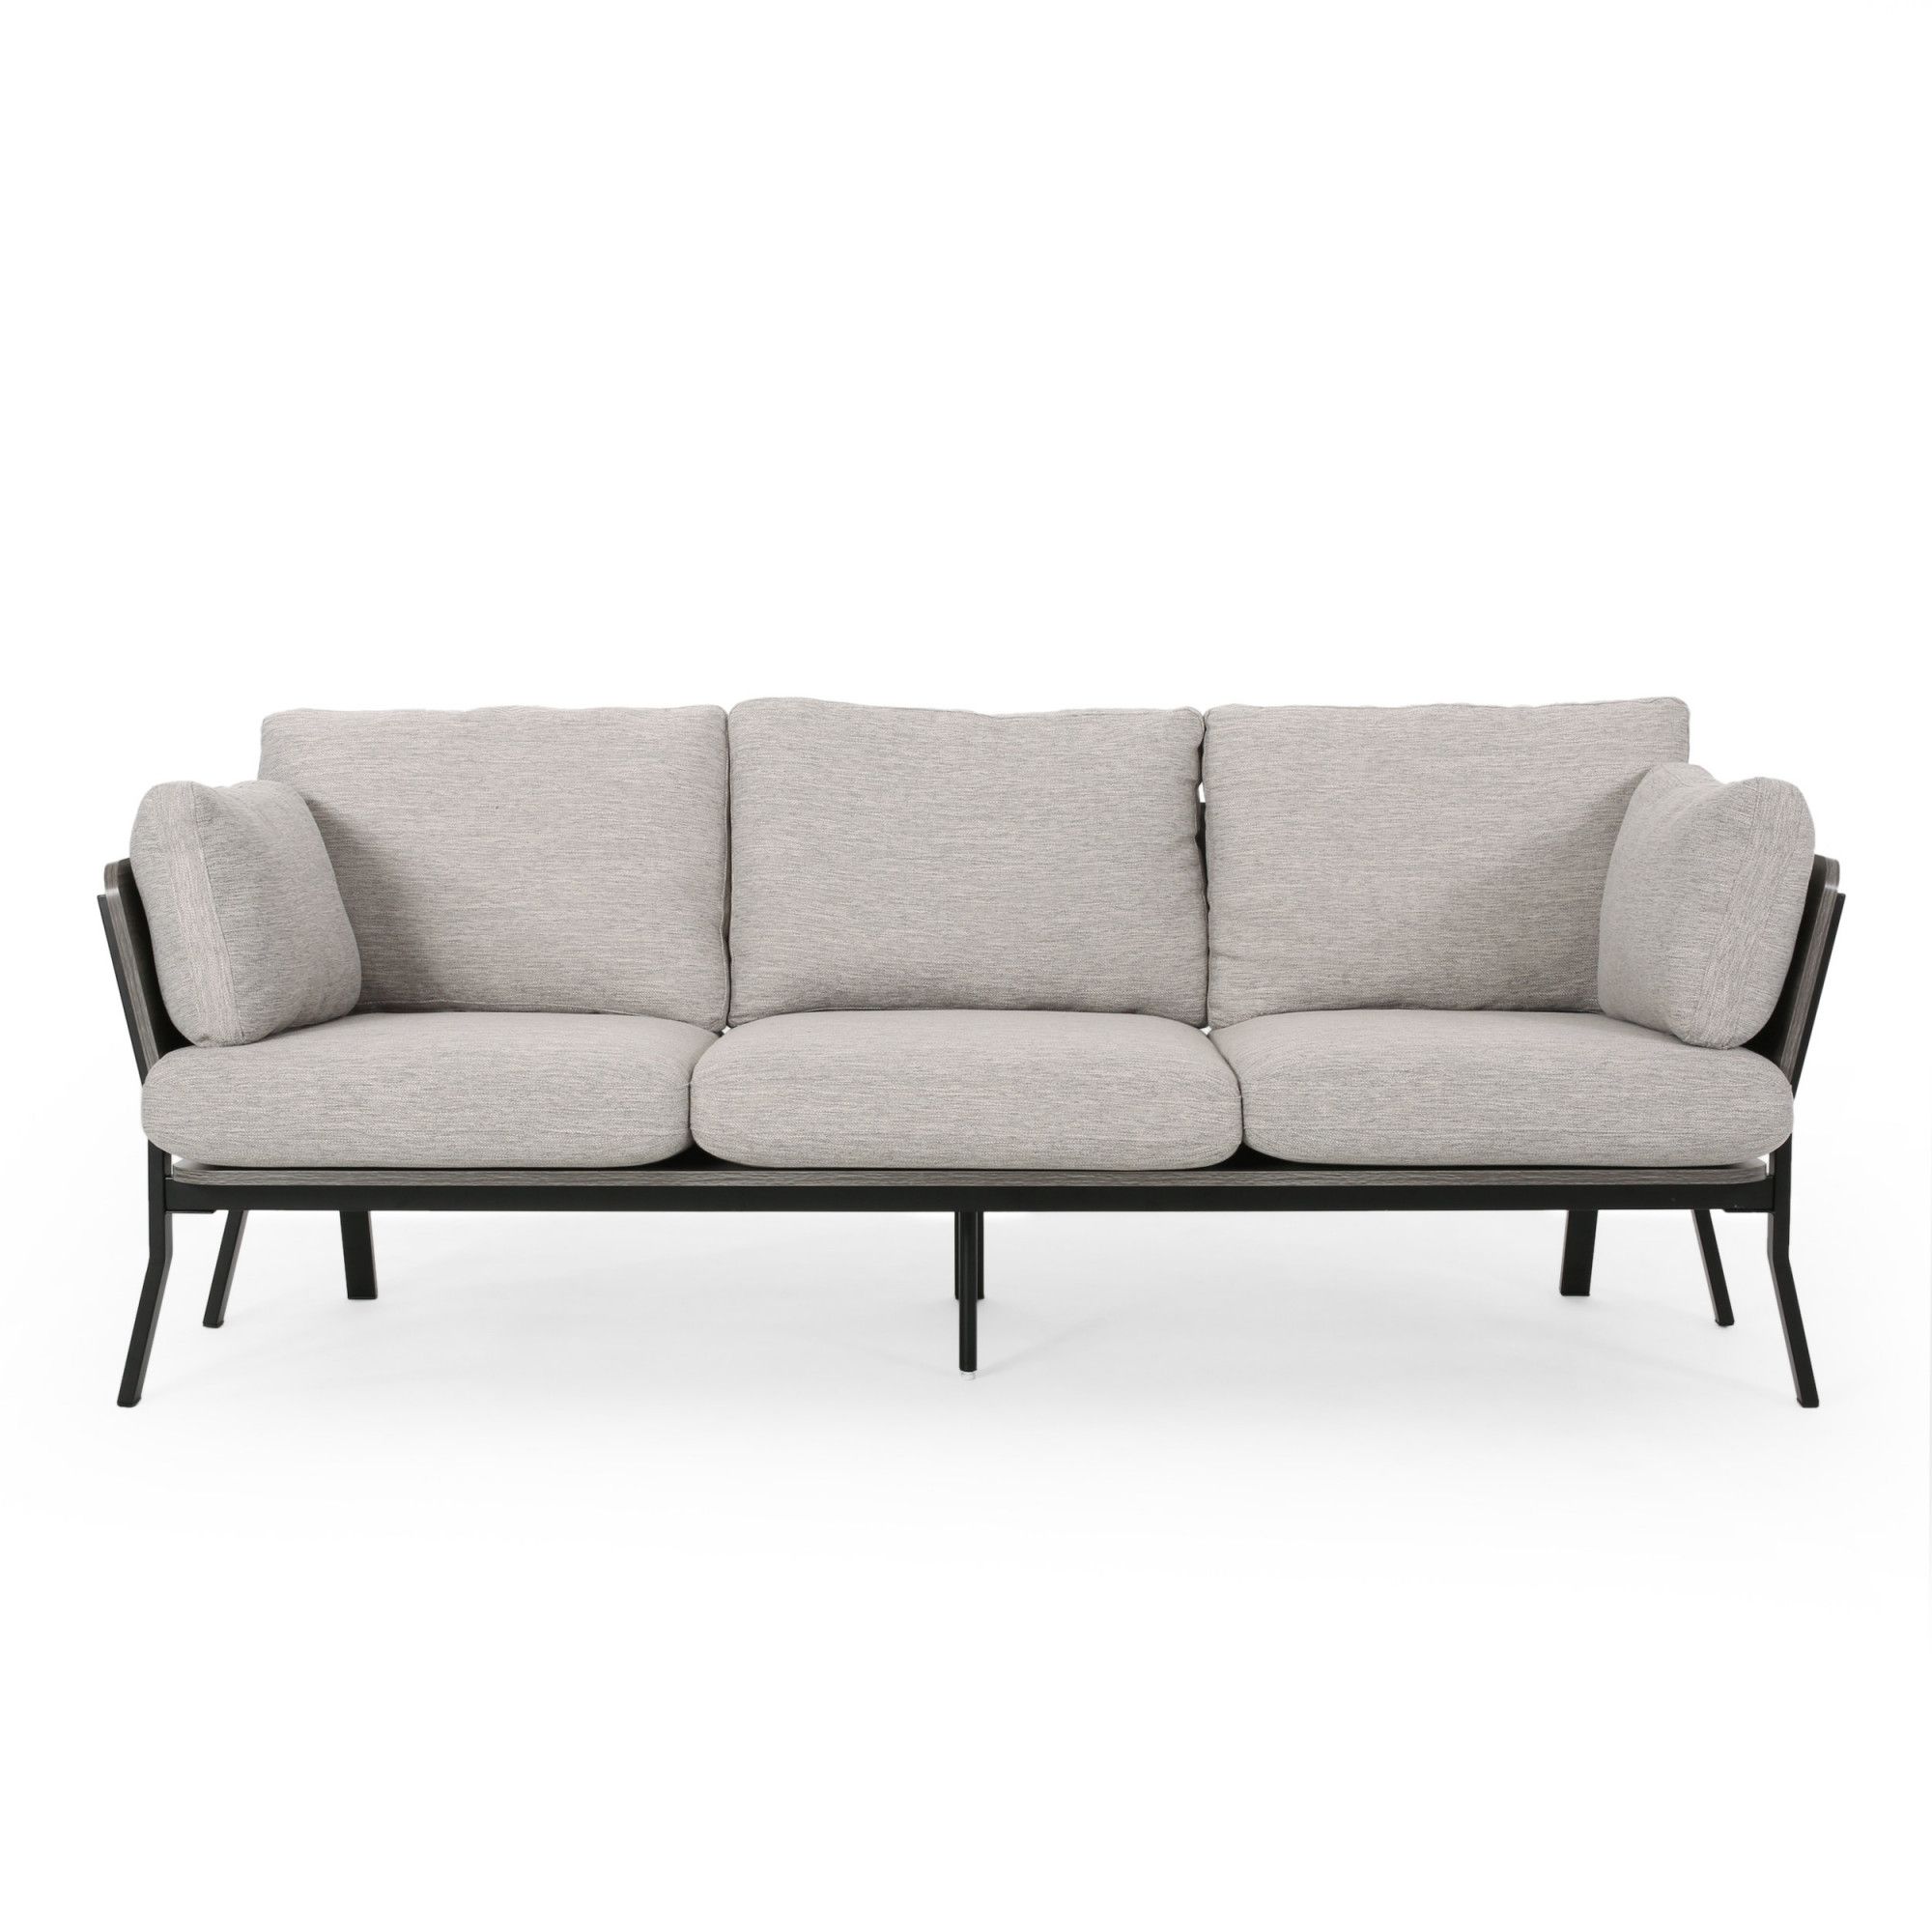 Carvel Midcentury Modern 3 Seater Wood Frame Sofa, Light Gray, Gray Inside Modern 3 Seater Sofas (Gallery 20 of 20)